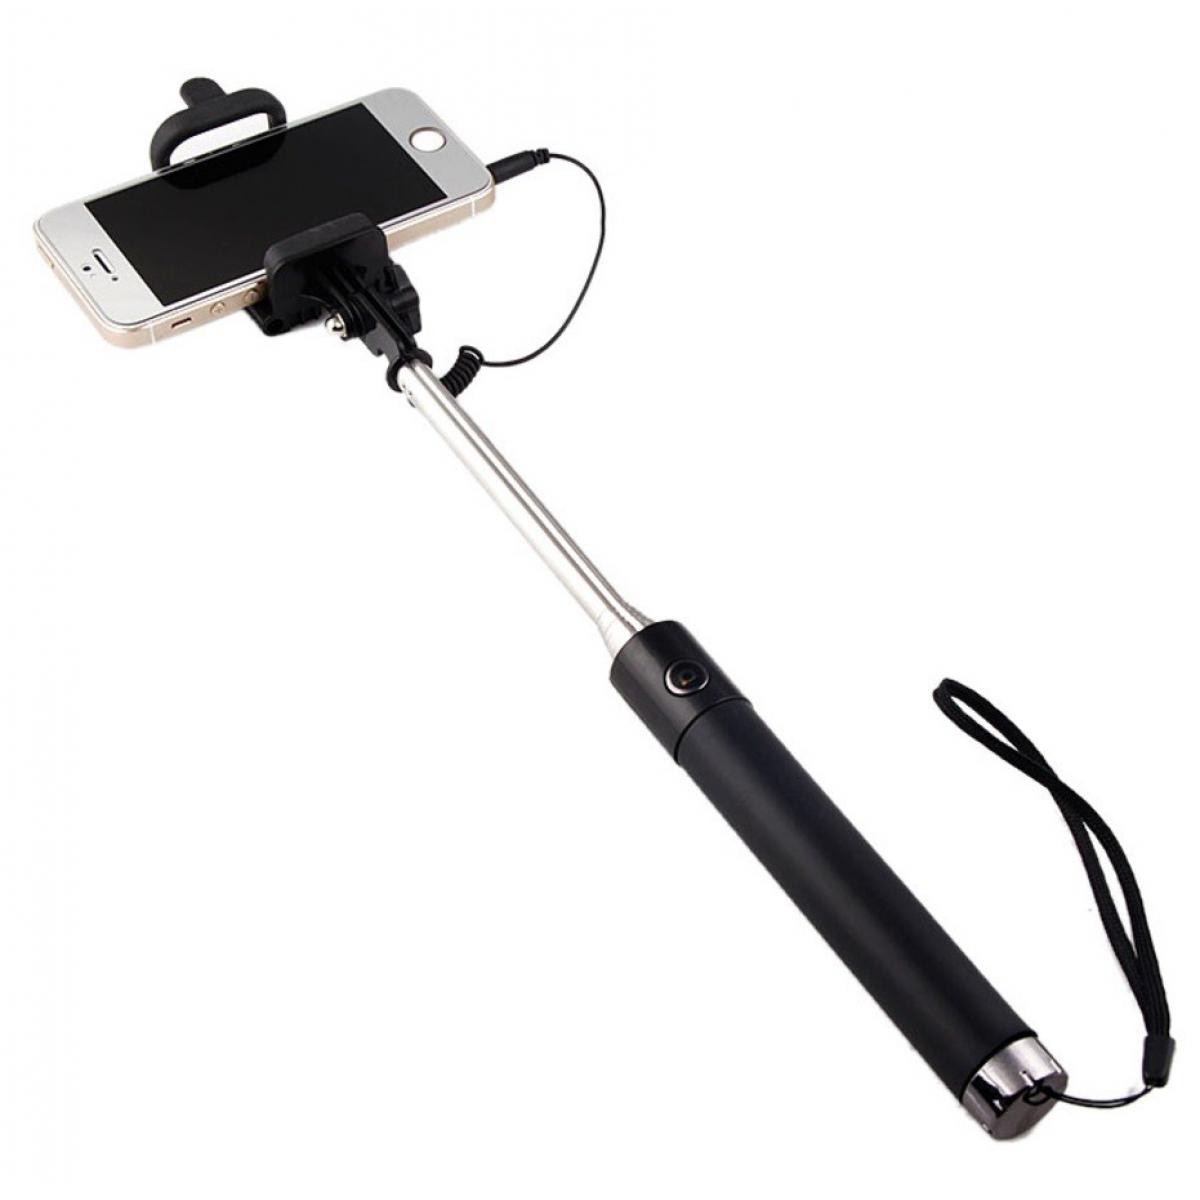 Shot - Perche Selfie Metal pour XIAOMI Redmi 7A Smartphone avec Cable Jack Selfie Stick Android IOS Reglable Bouton Photo (NOIR) - Autres accessoires smartphone